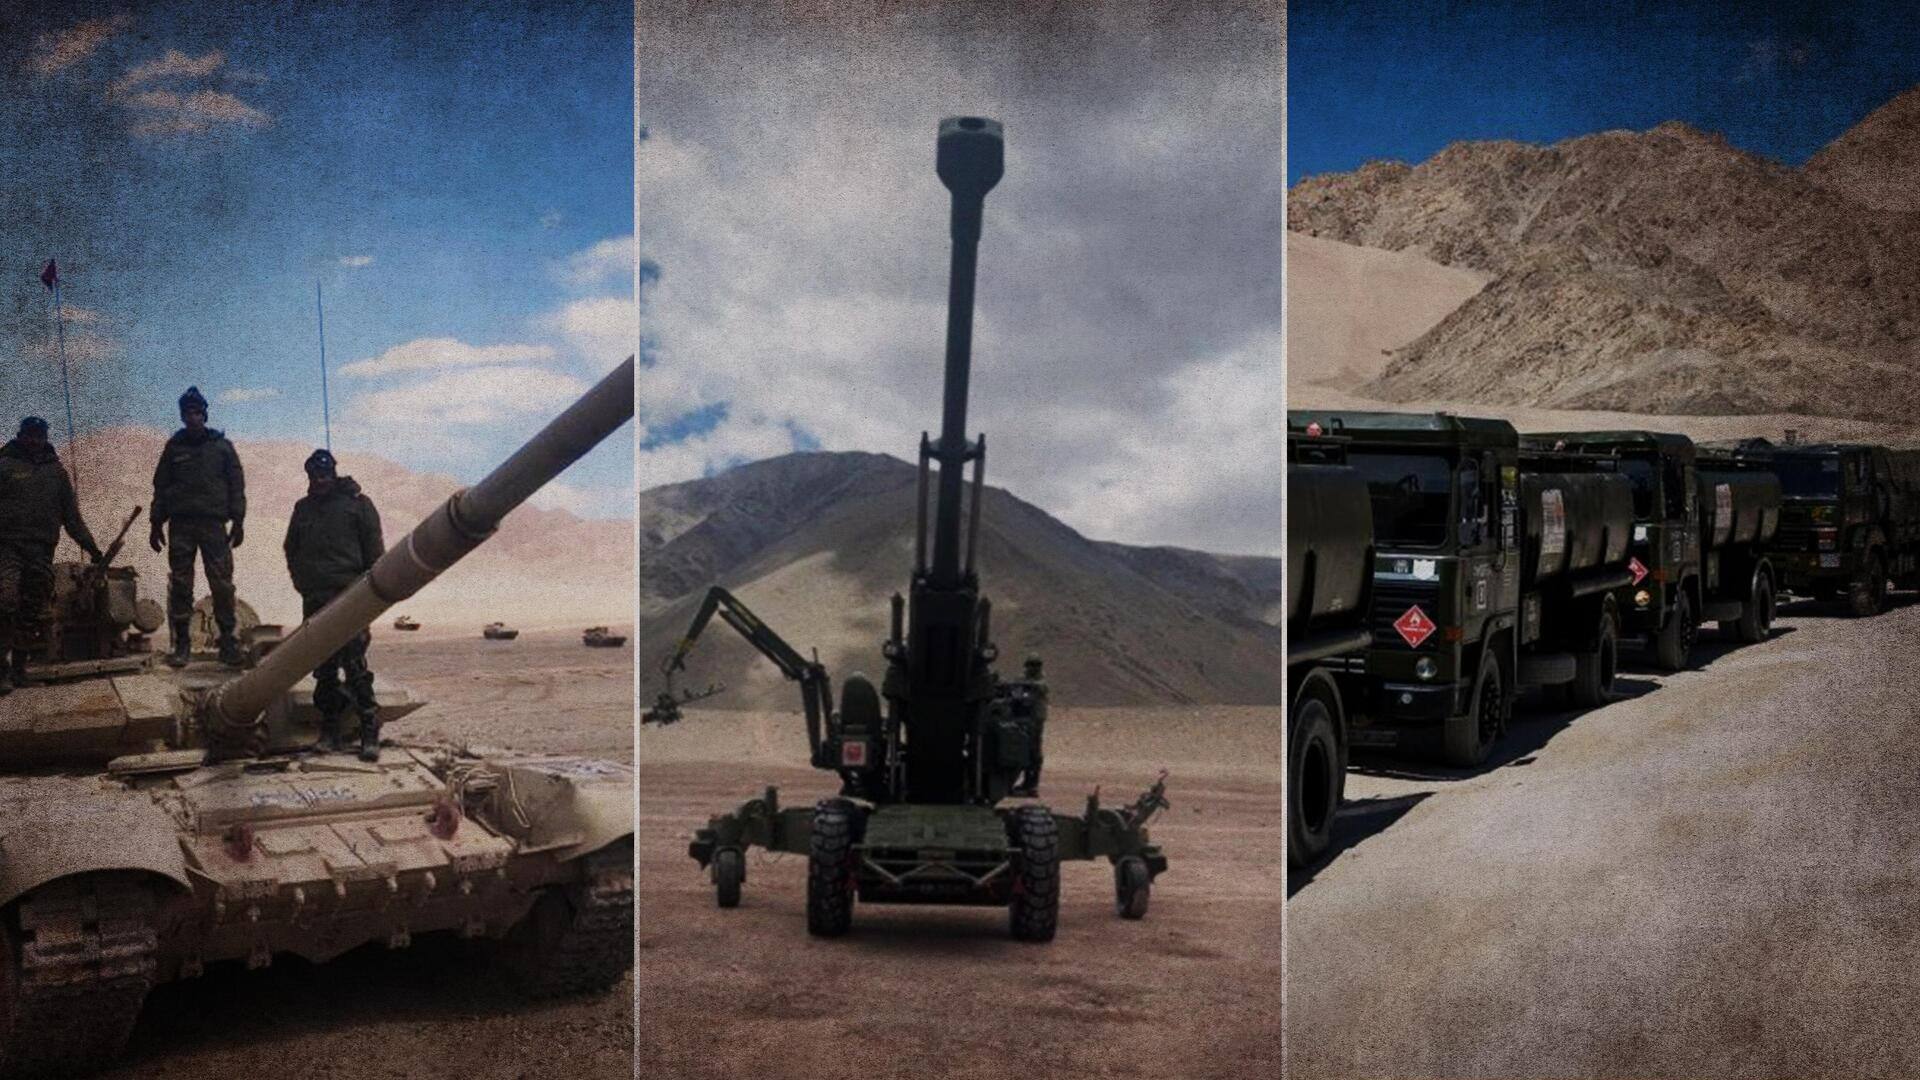 पूर्वी लद्दाख: भारतीय सेना ने तैनात किए टैंक और बख्तरबंद वाहन, किया विशेष युद्धाभ्यास